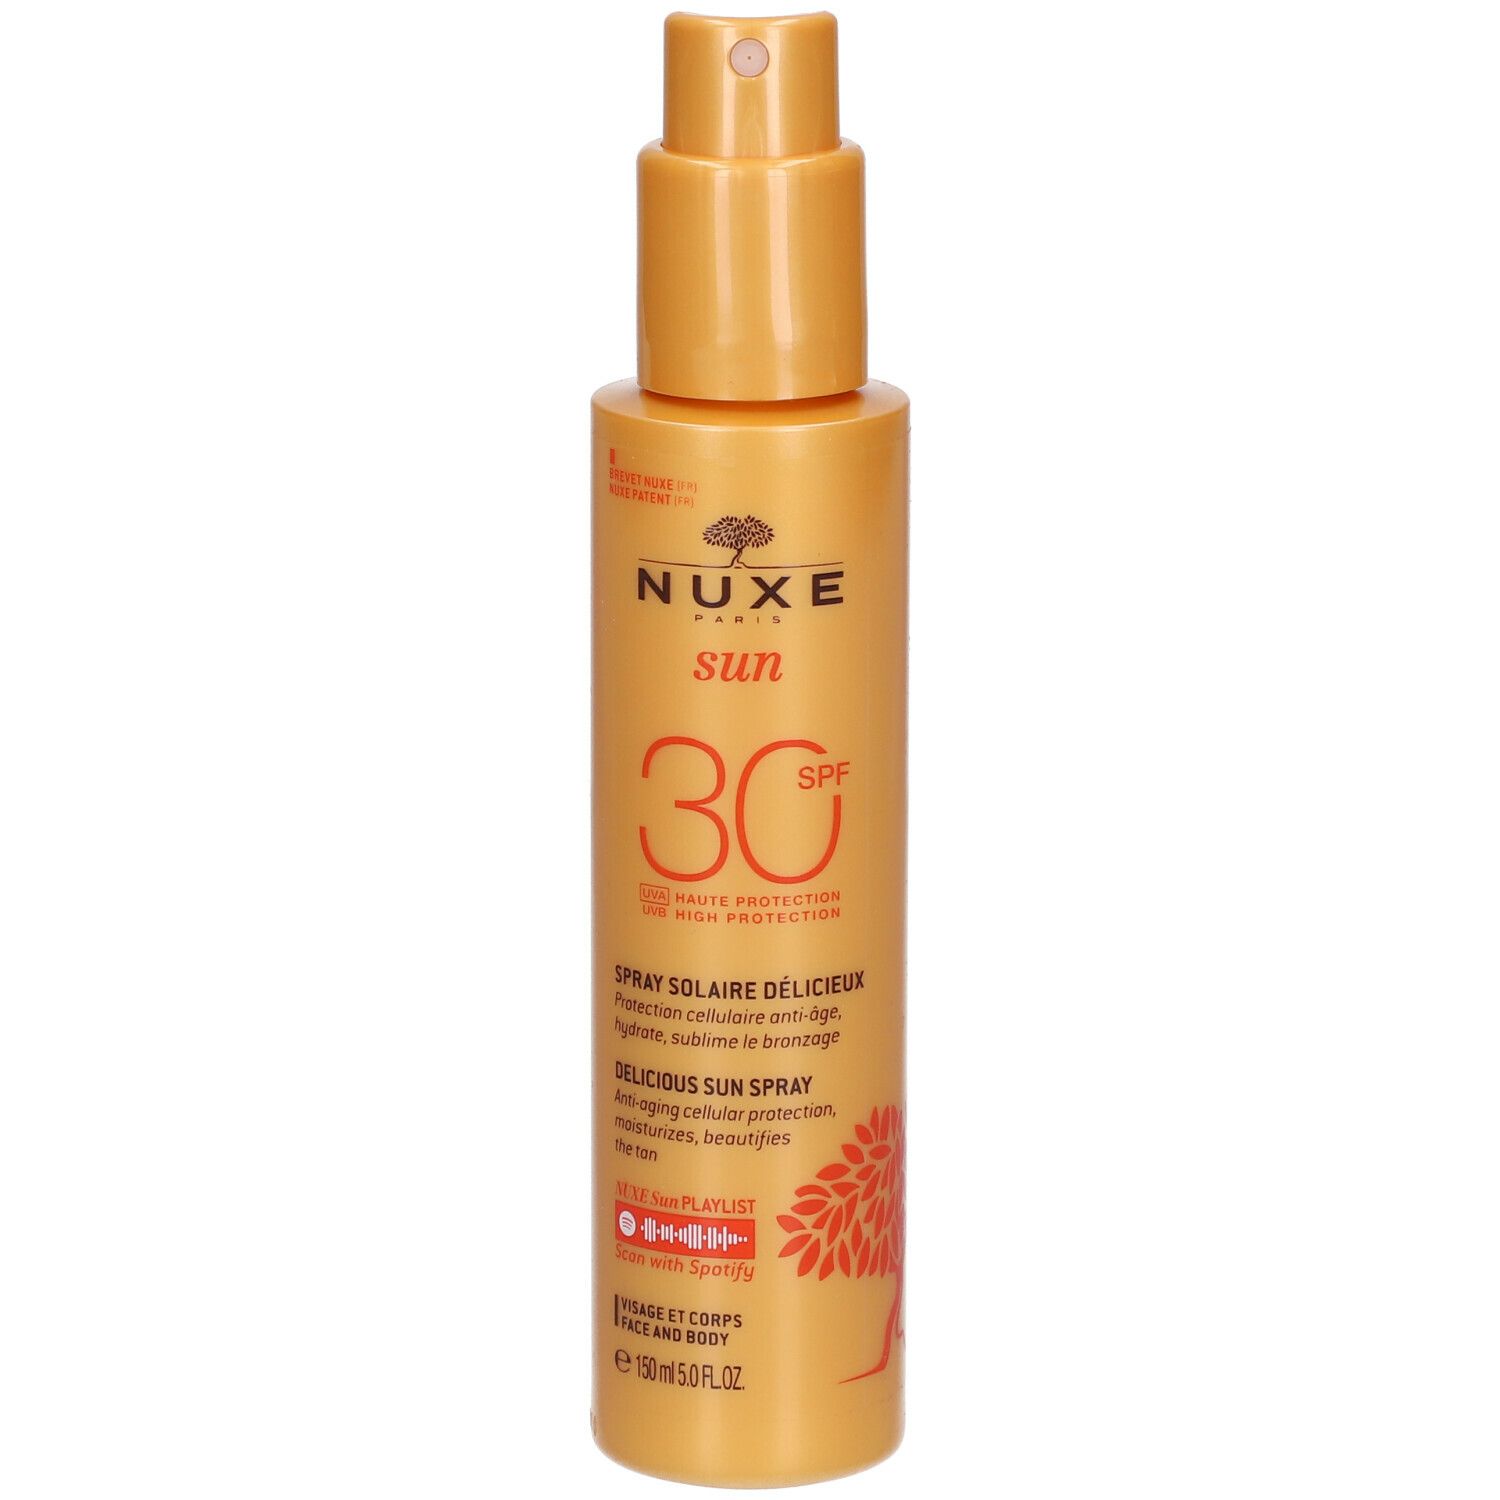 Nuxe Spray Solaire Délicieux Haute Protection Spf30 visage et corps